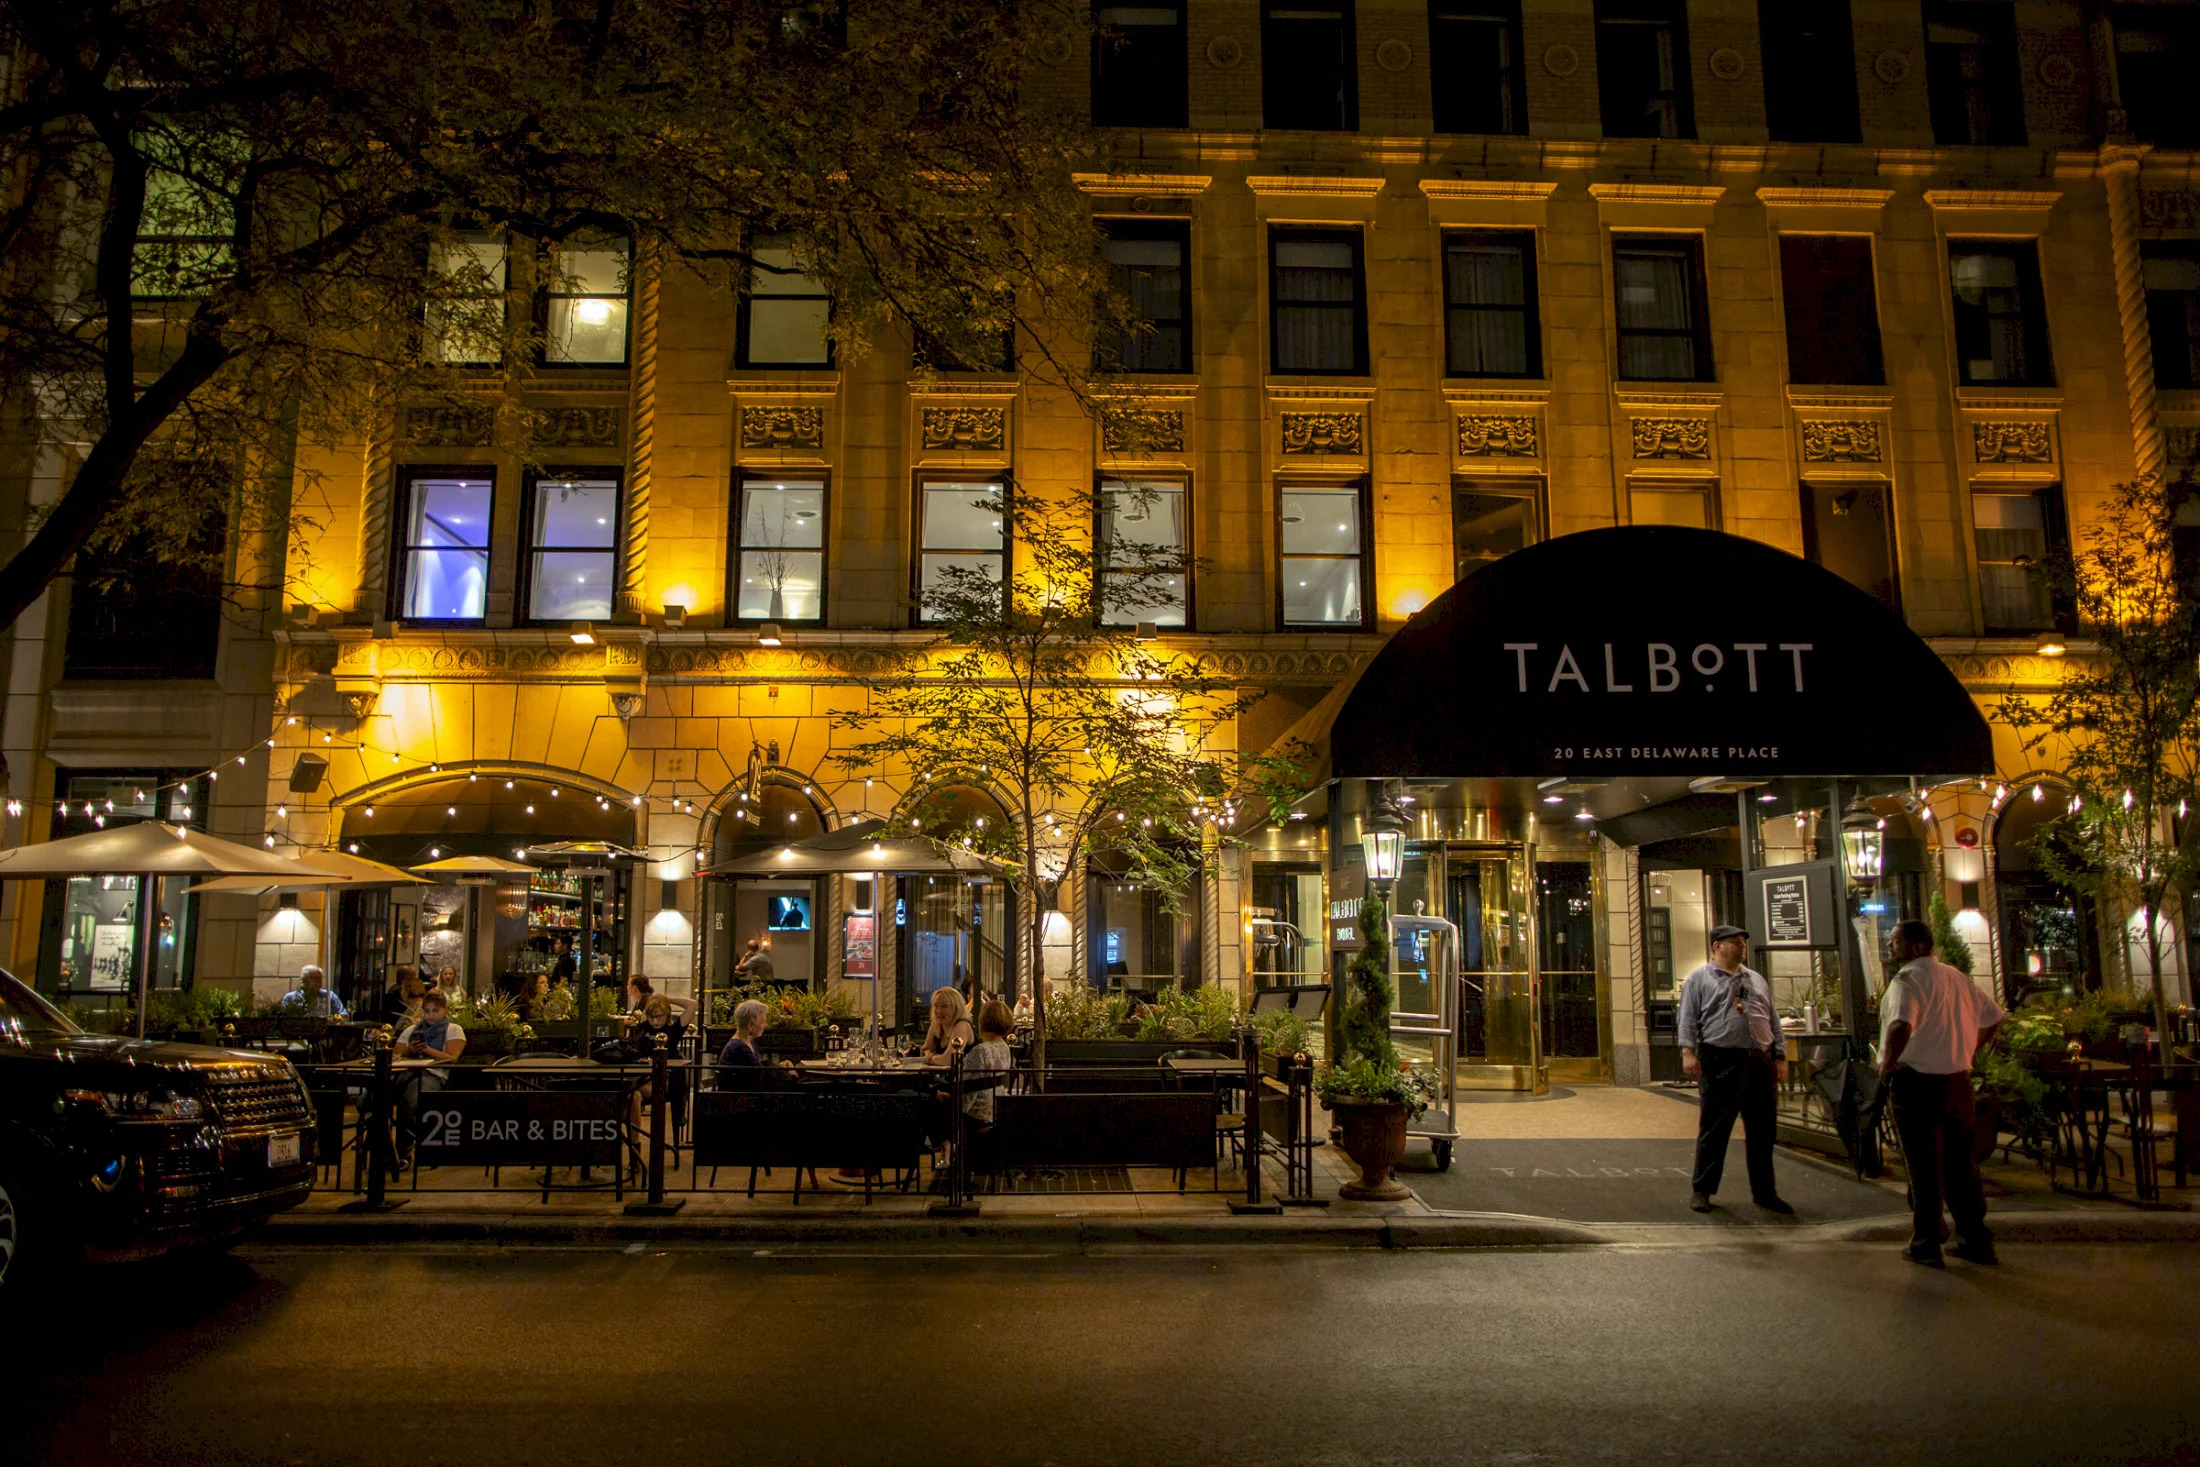 Photo of Talbott Hotel, Chicago, IL